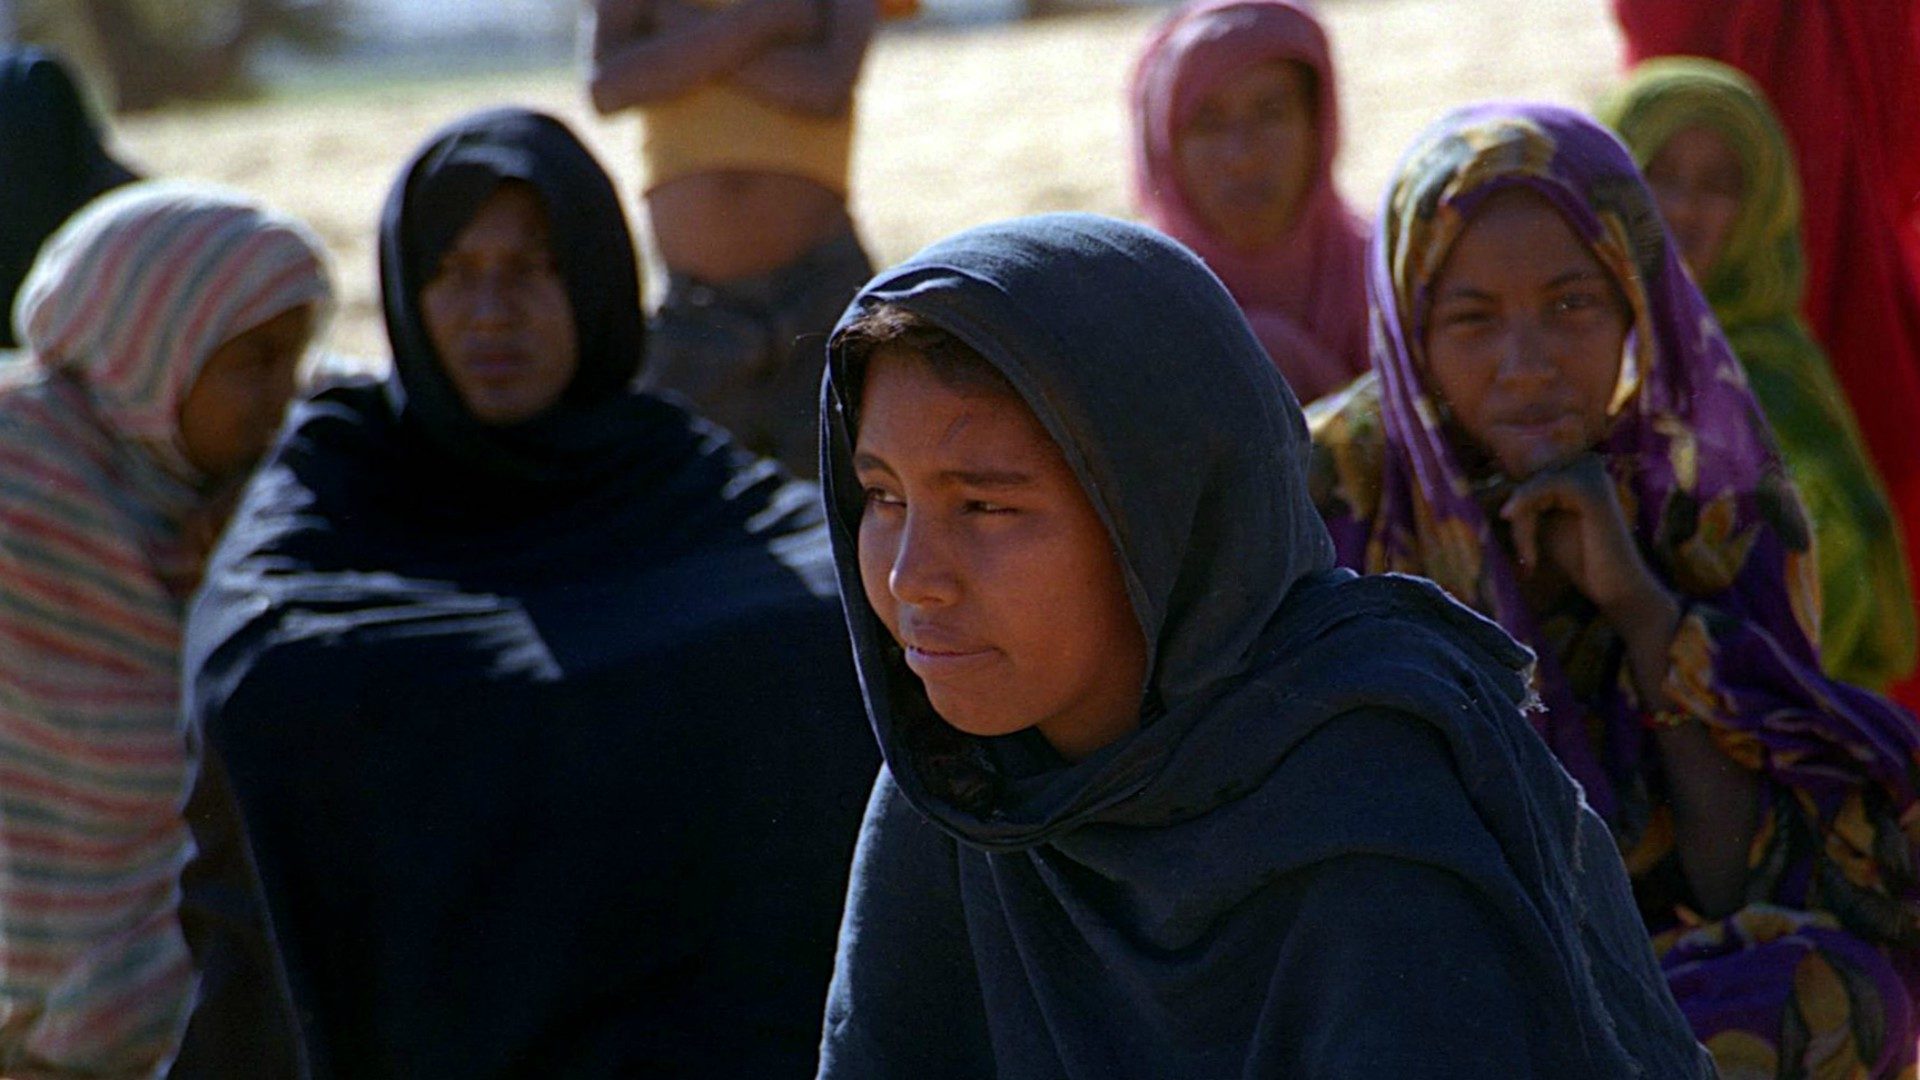 Les femmes d'Afrique de l'Ouest et du Sahel peuvent jouer un grand rôle dans la prévention de l'extrémisme (Photo d'illustration:Christine Vaufrey/Flickr/CC BY-NC 2.0)